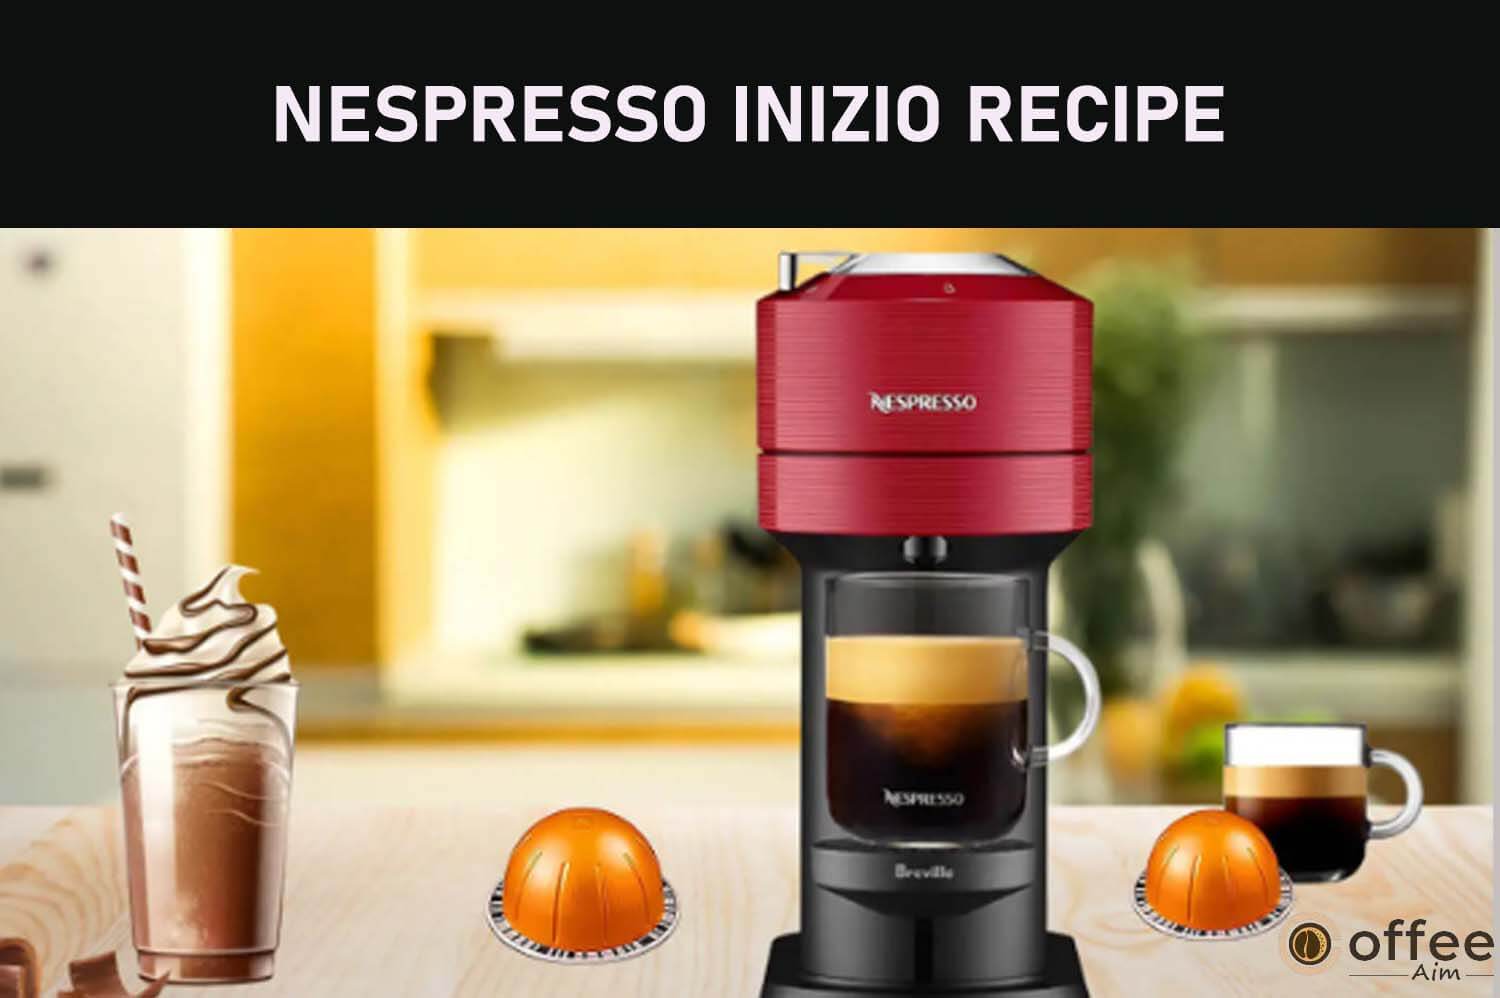 Featured image for the article "Nespresso Inizio Recipe"